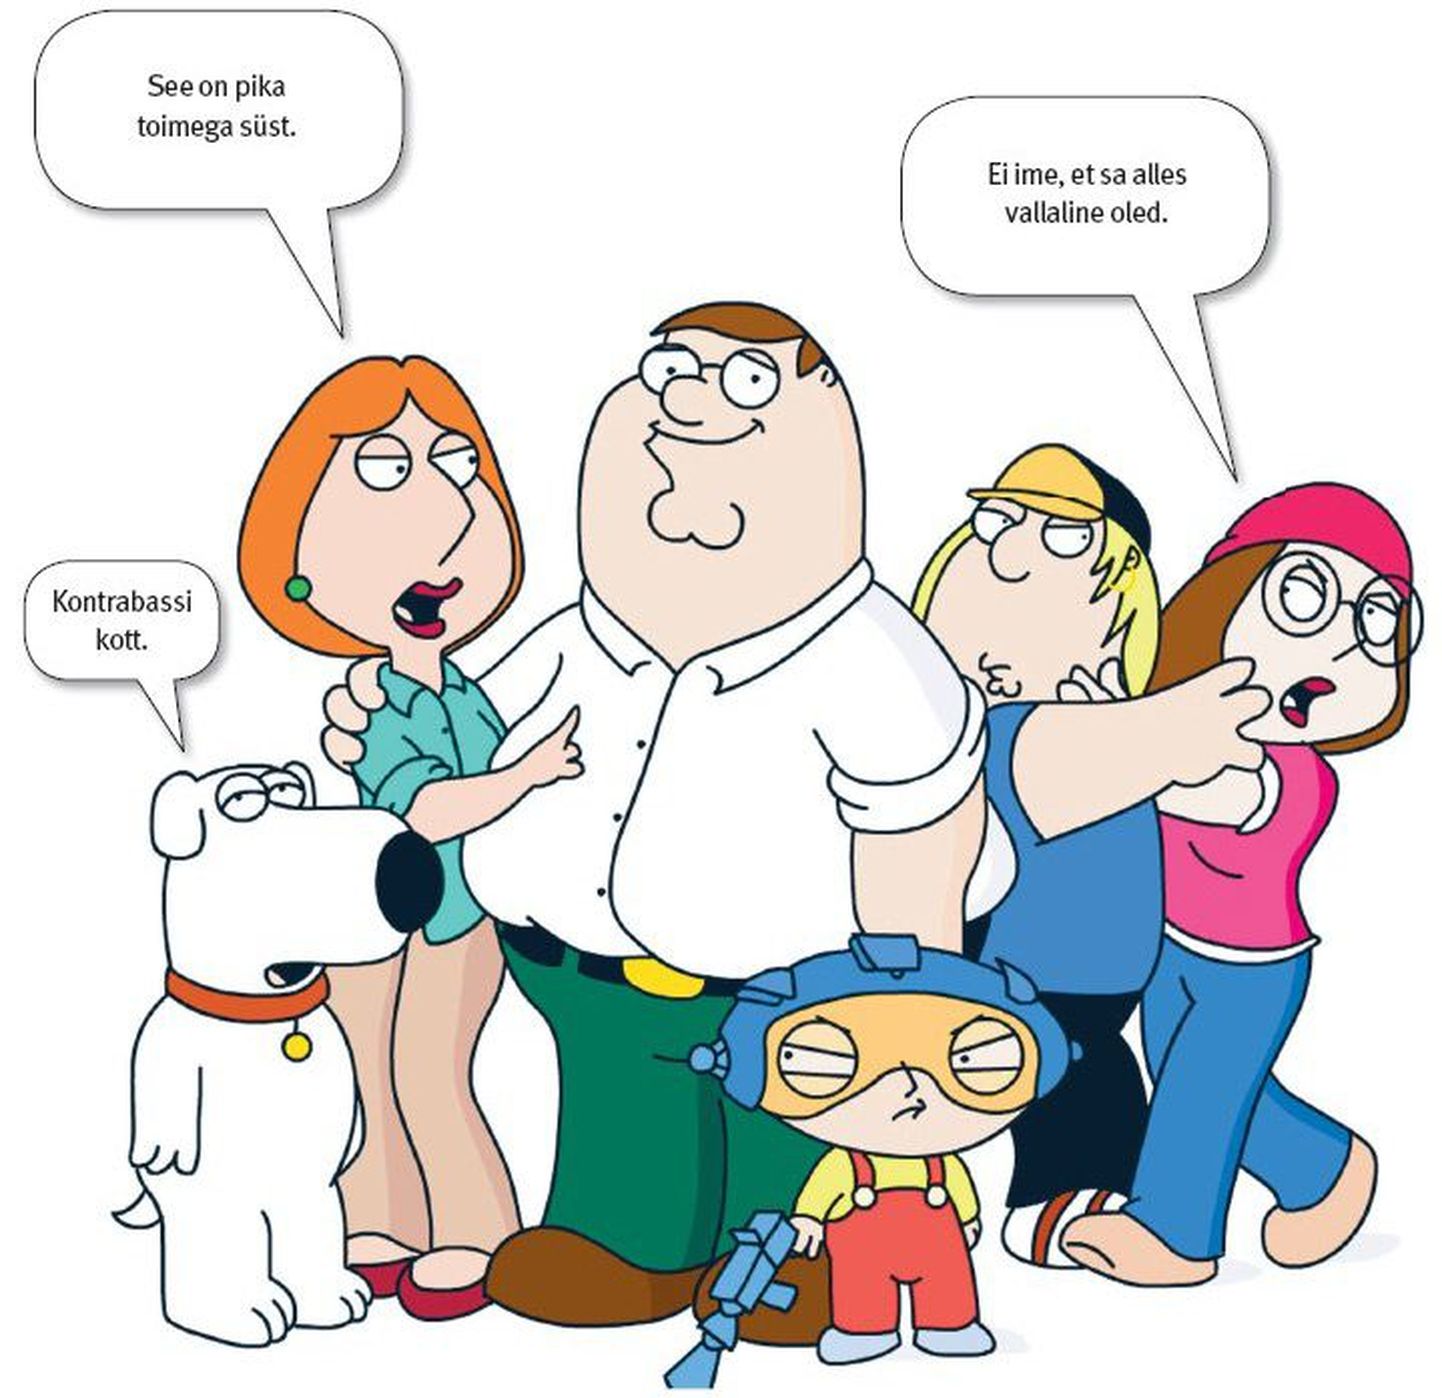 Tegelased joonissarjast «Family Guy», millest on saanud tõlkevigade sünonüüm.